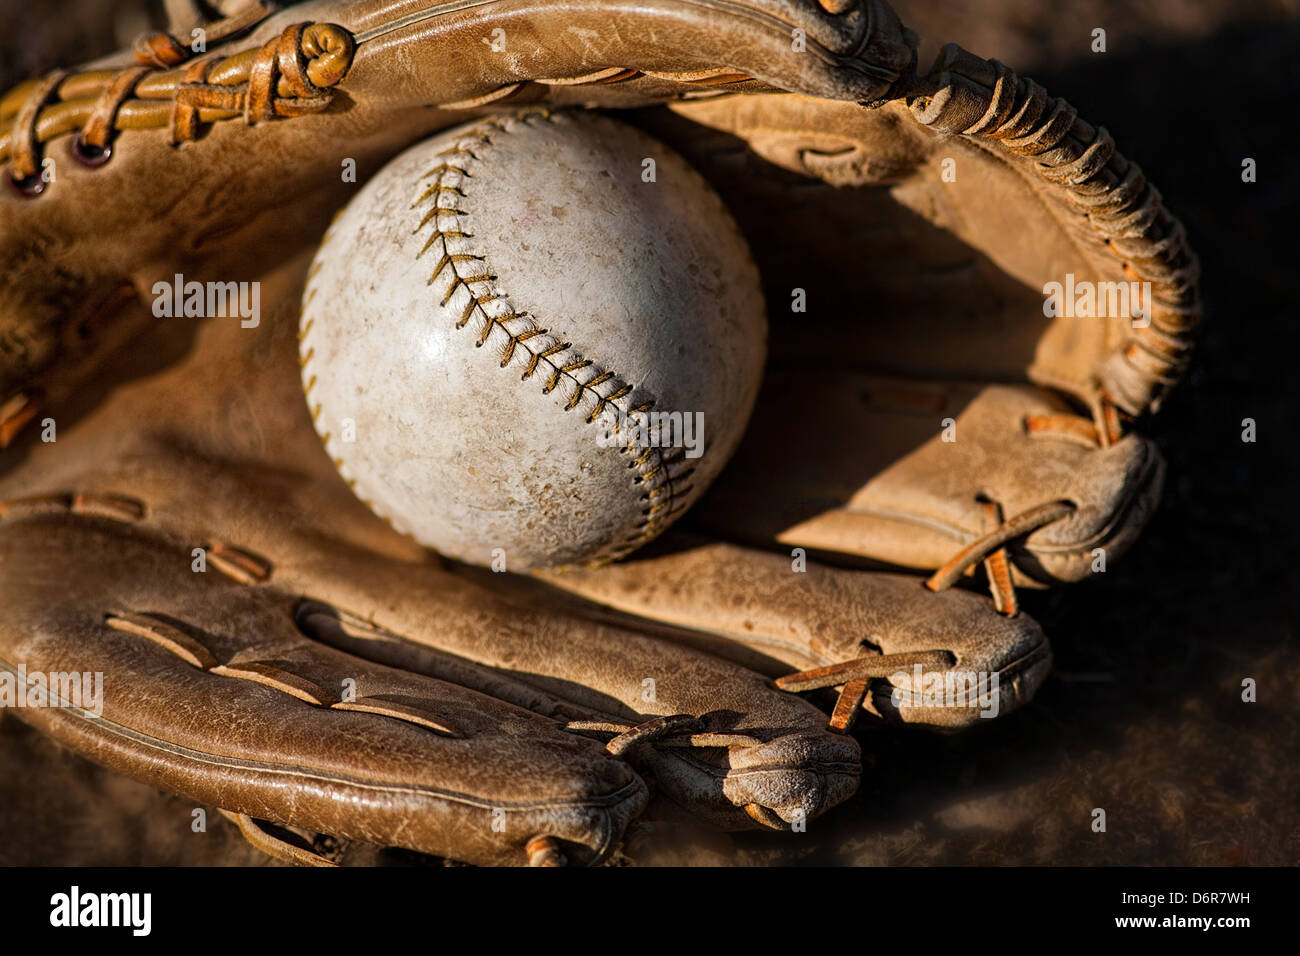 Softball and Glove Stock Photo